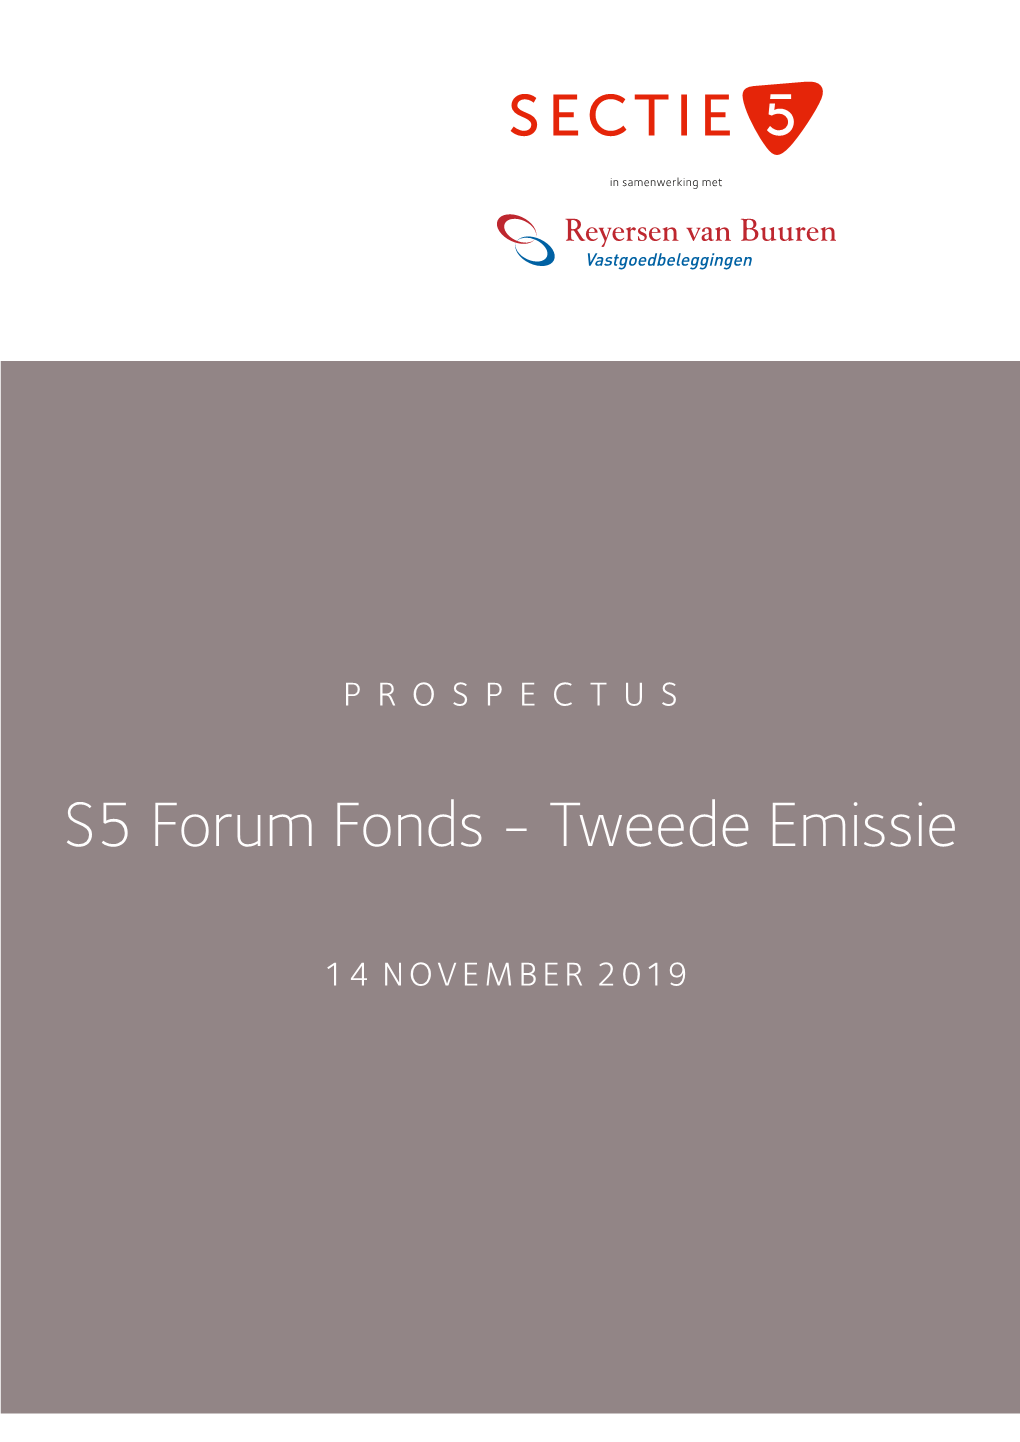 S5 Forum Fonds - Tweede Emissie